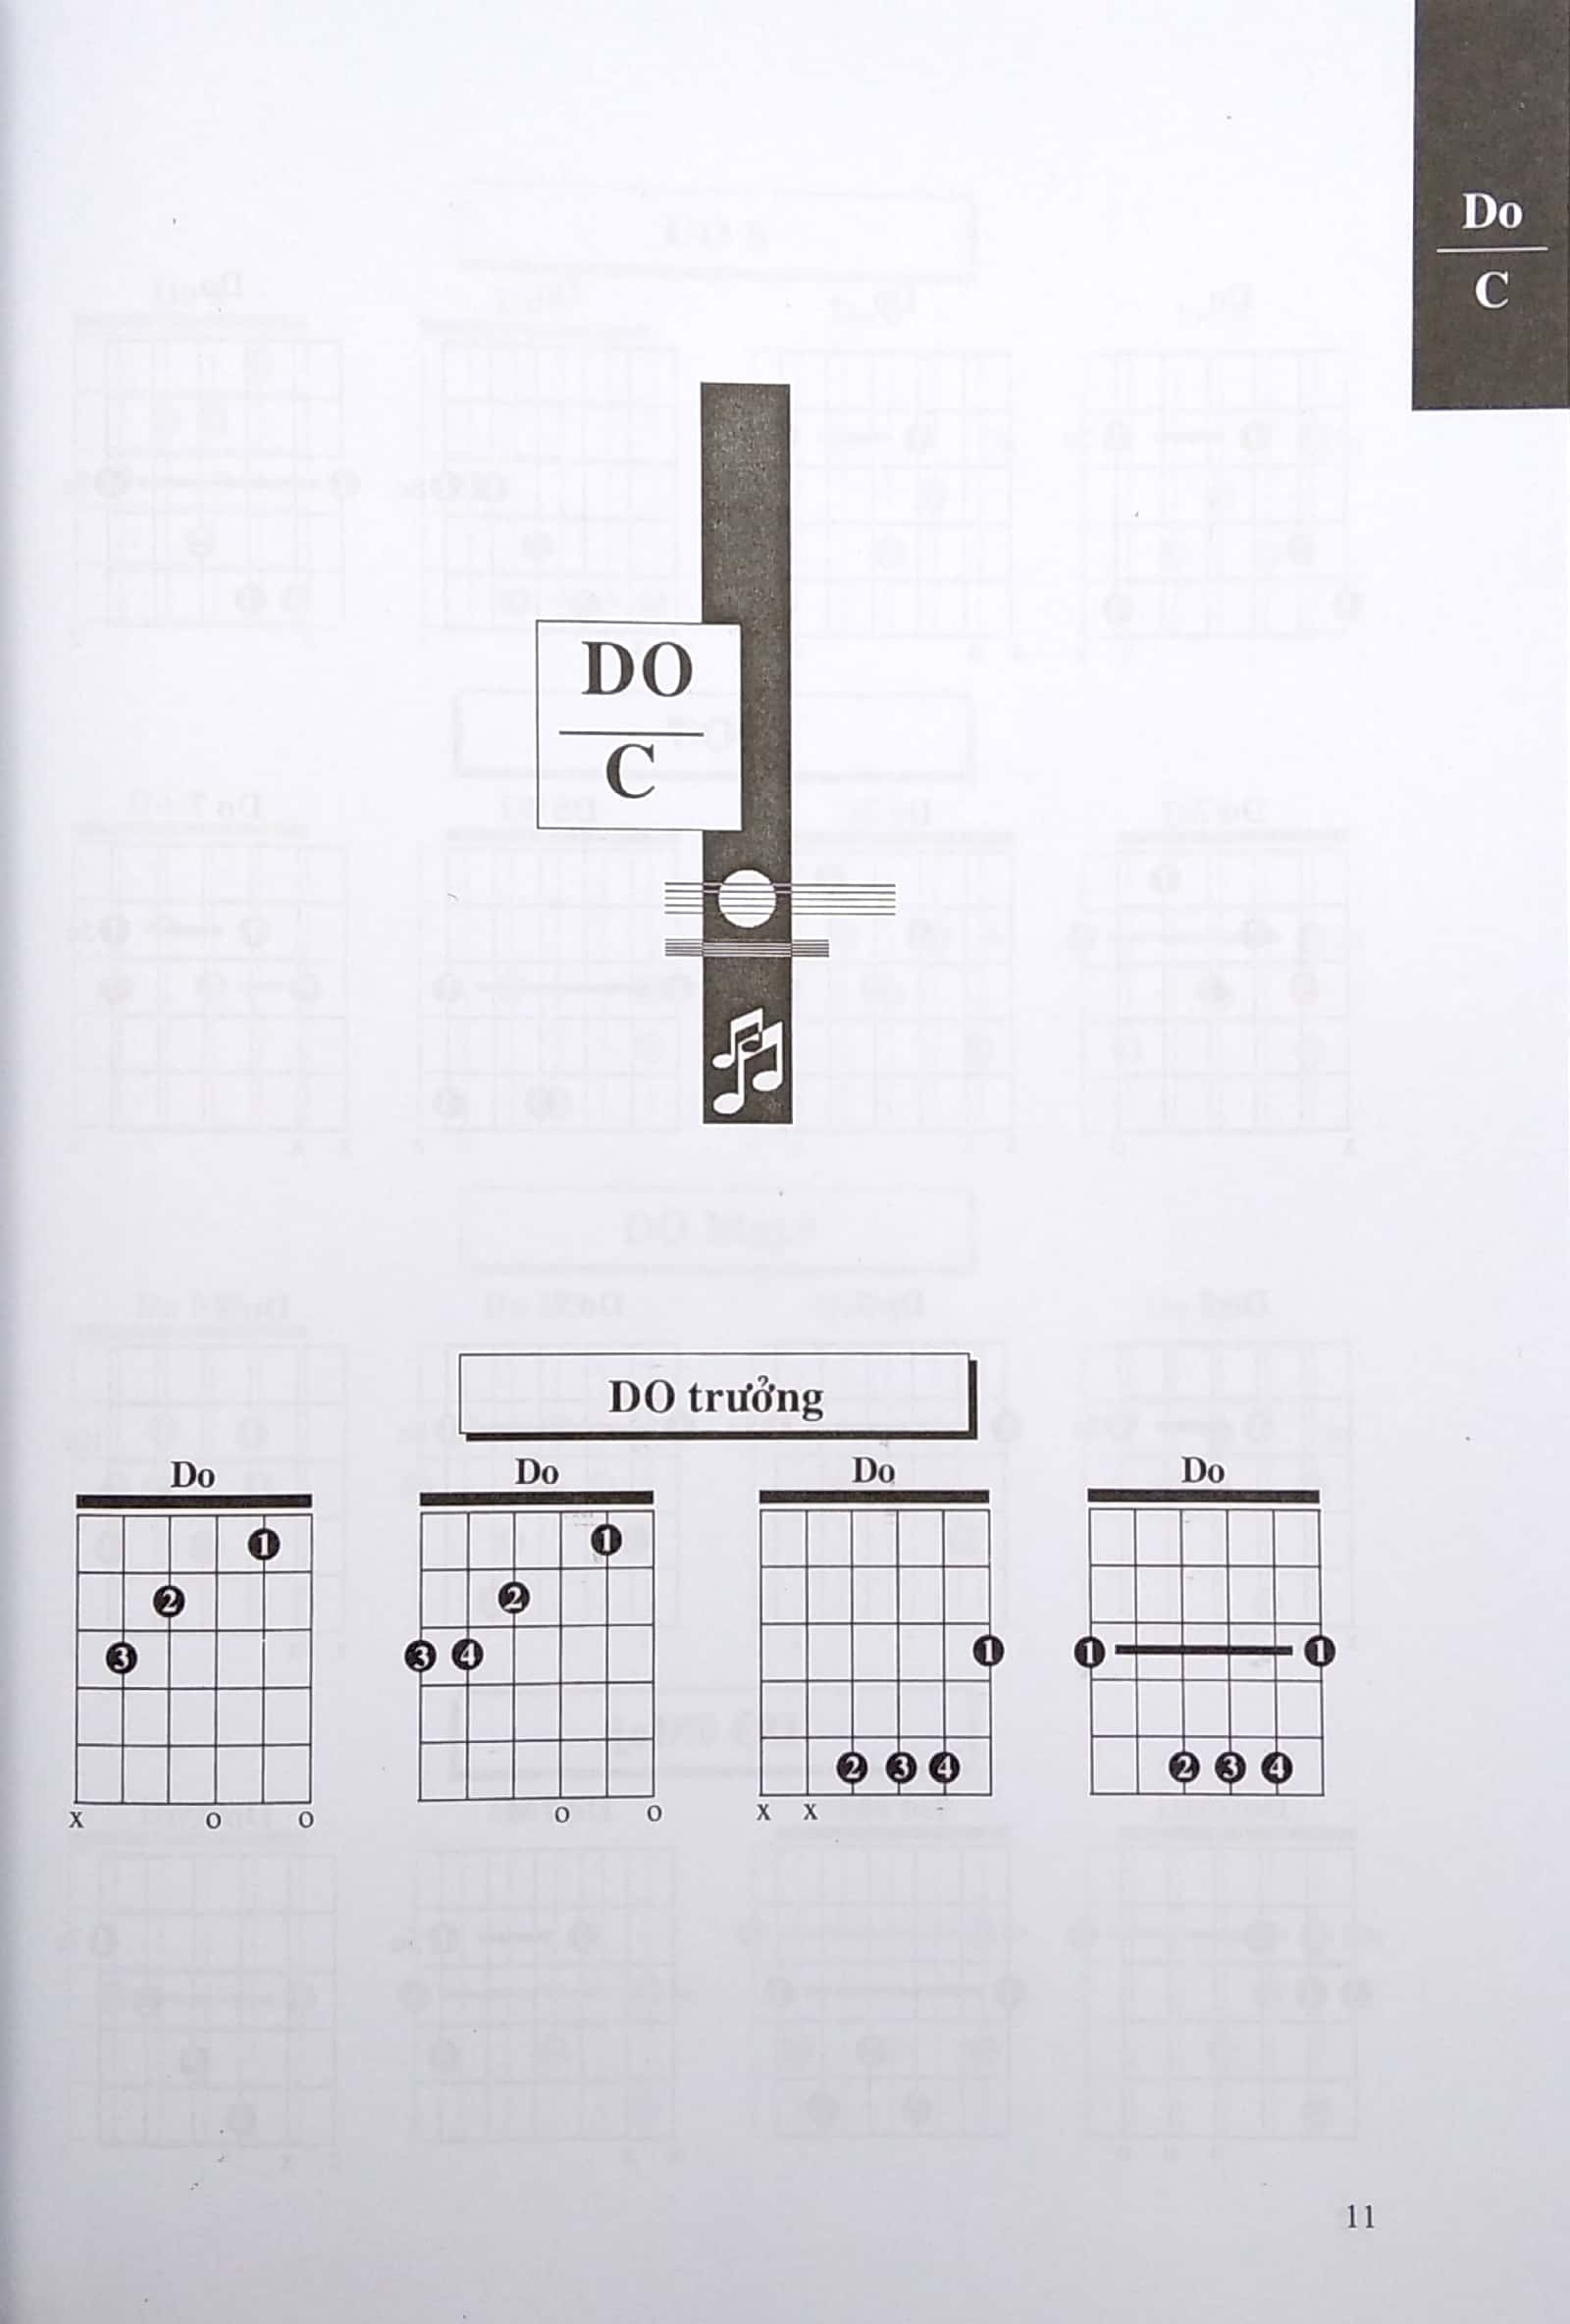 1000 Hợp Âm Cho Đàn Guitare PDF